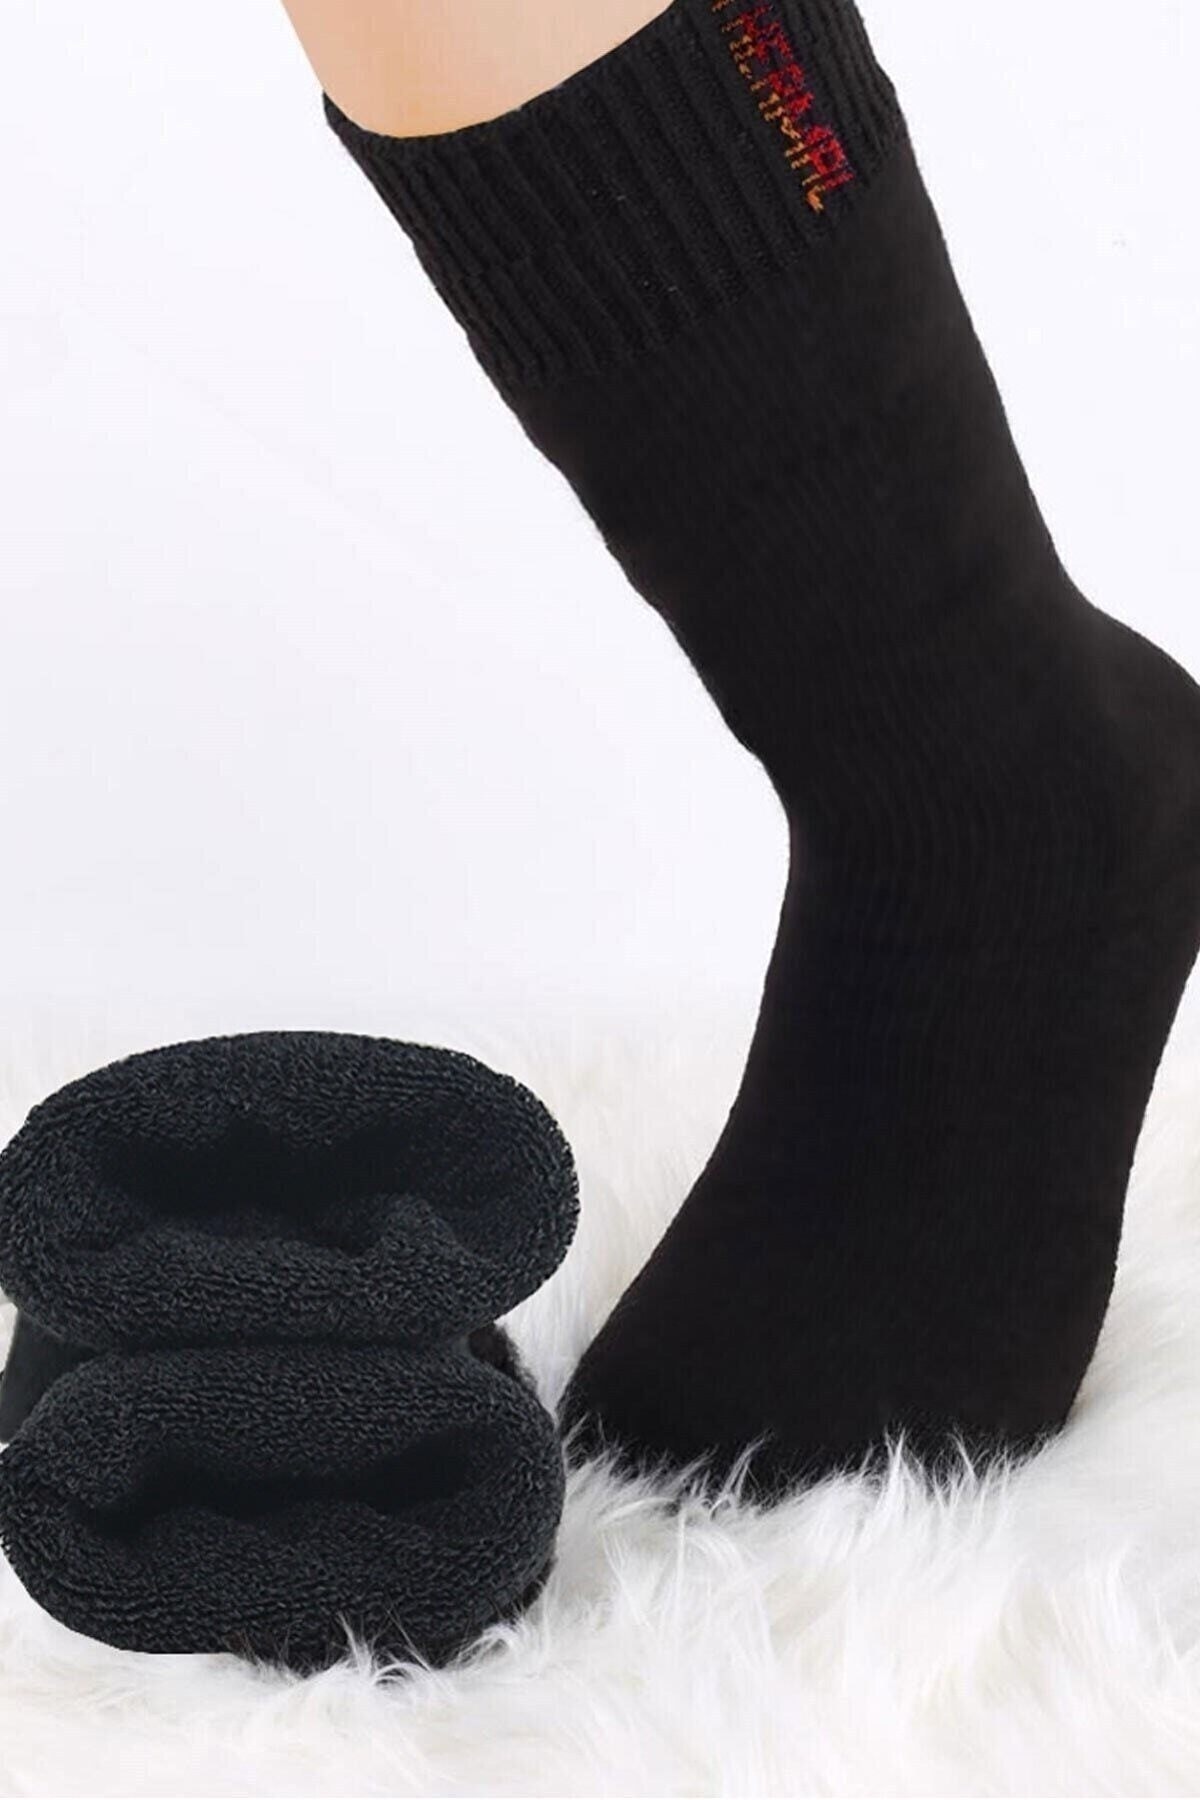 Meguca Socks Unisex Siyah 3 Çift Termal Havlu Kışlık Çorap